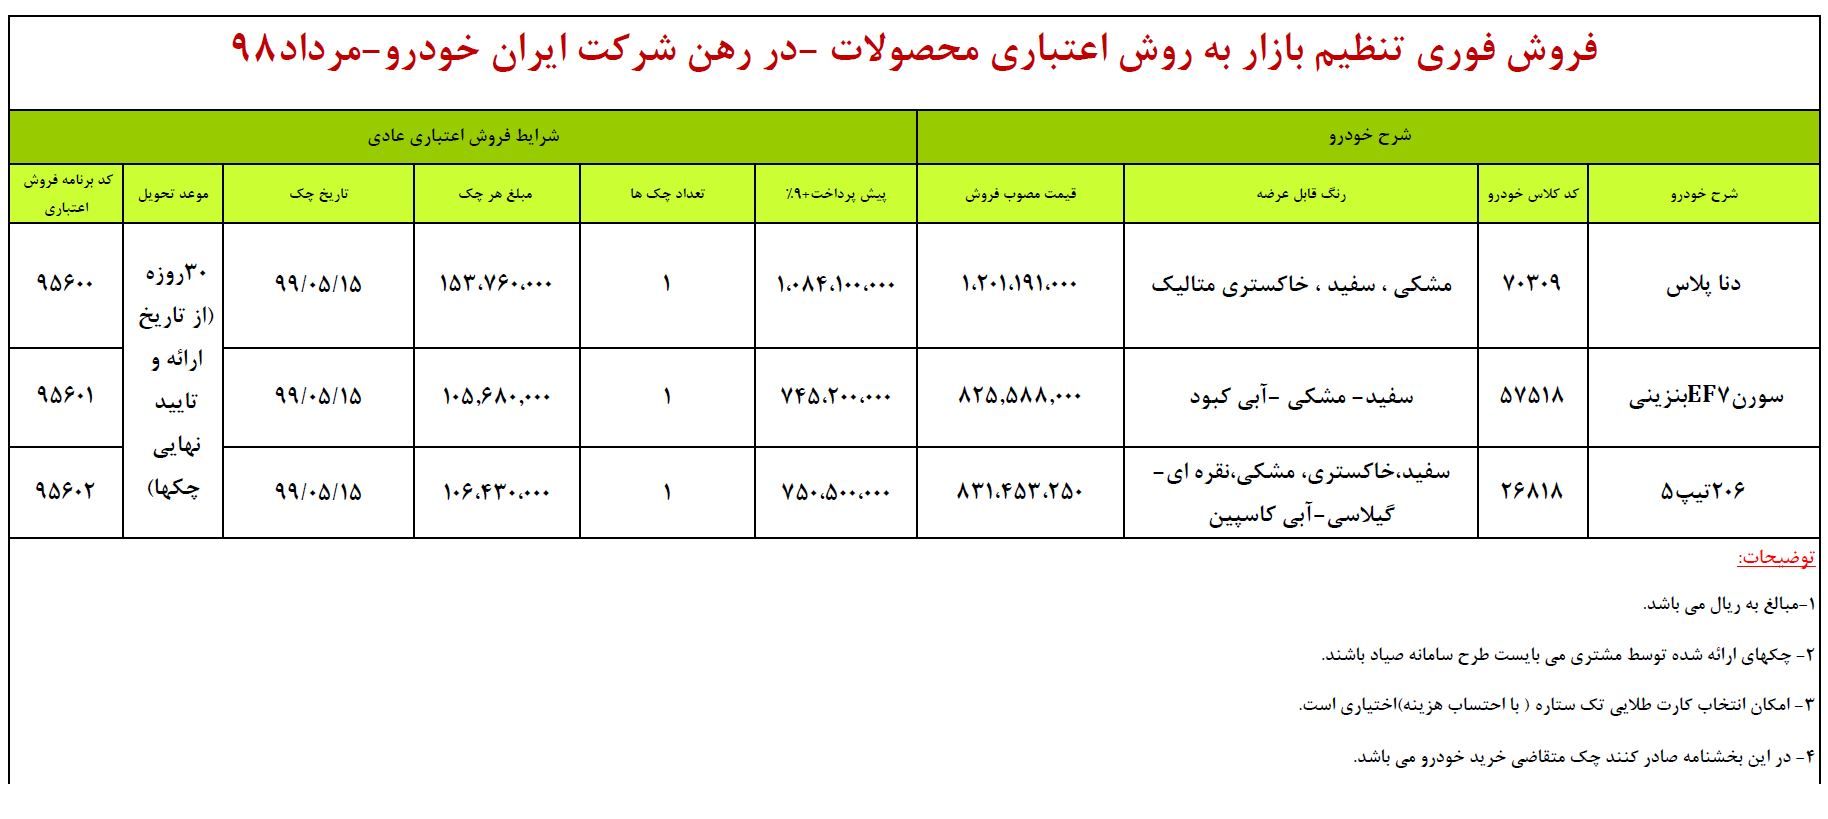 فروش اقساطی 3 محصول ایران خودرو (+جدول)